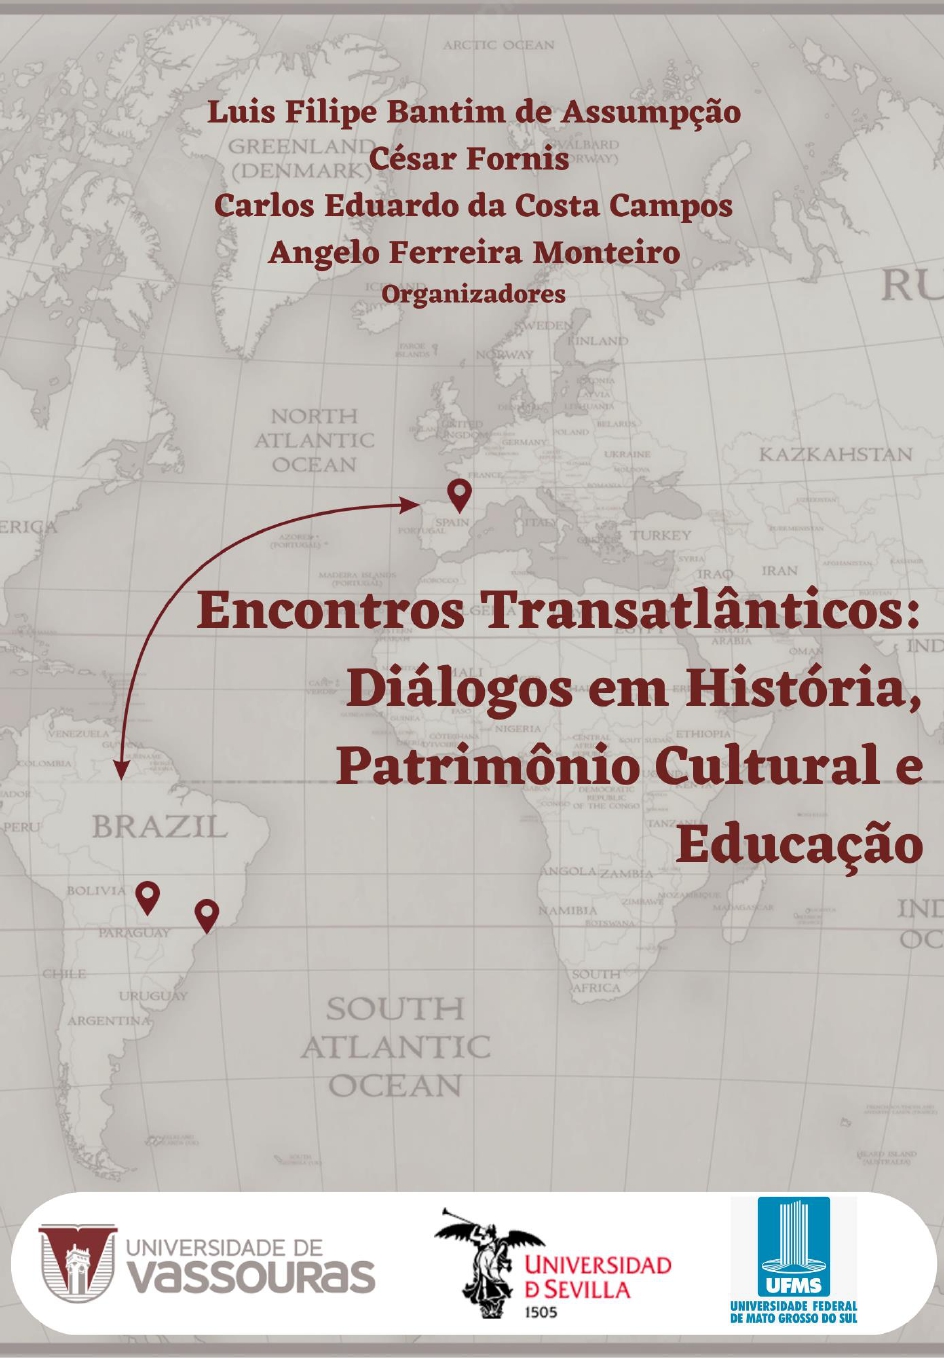 					View 2023: Encontros Transatlânticos: Diálogos Interinstitucionais em História, Patrimônio Cultural e Educação
				